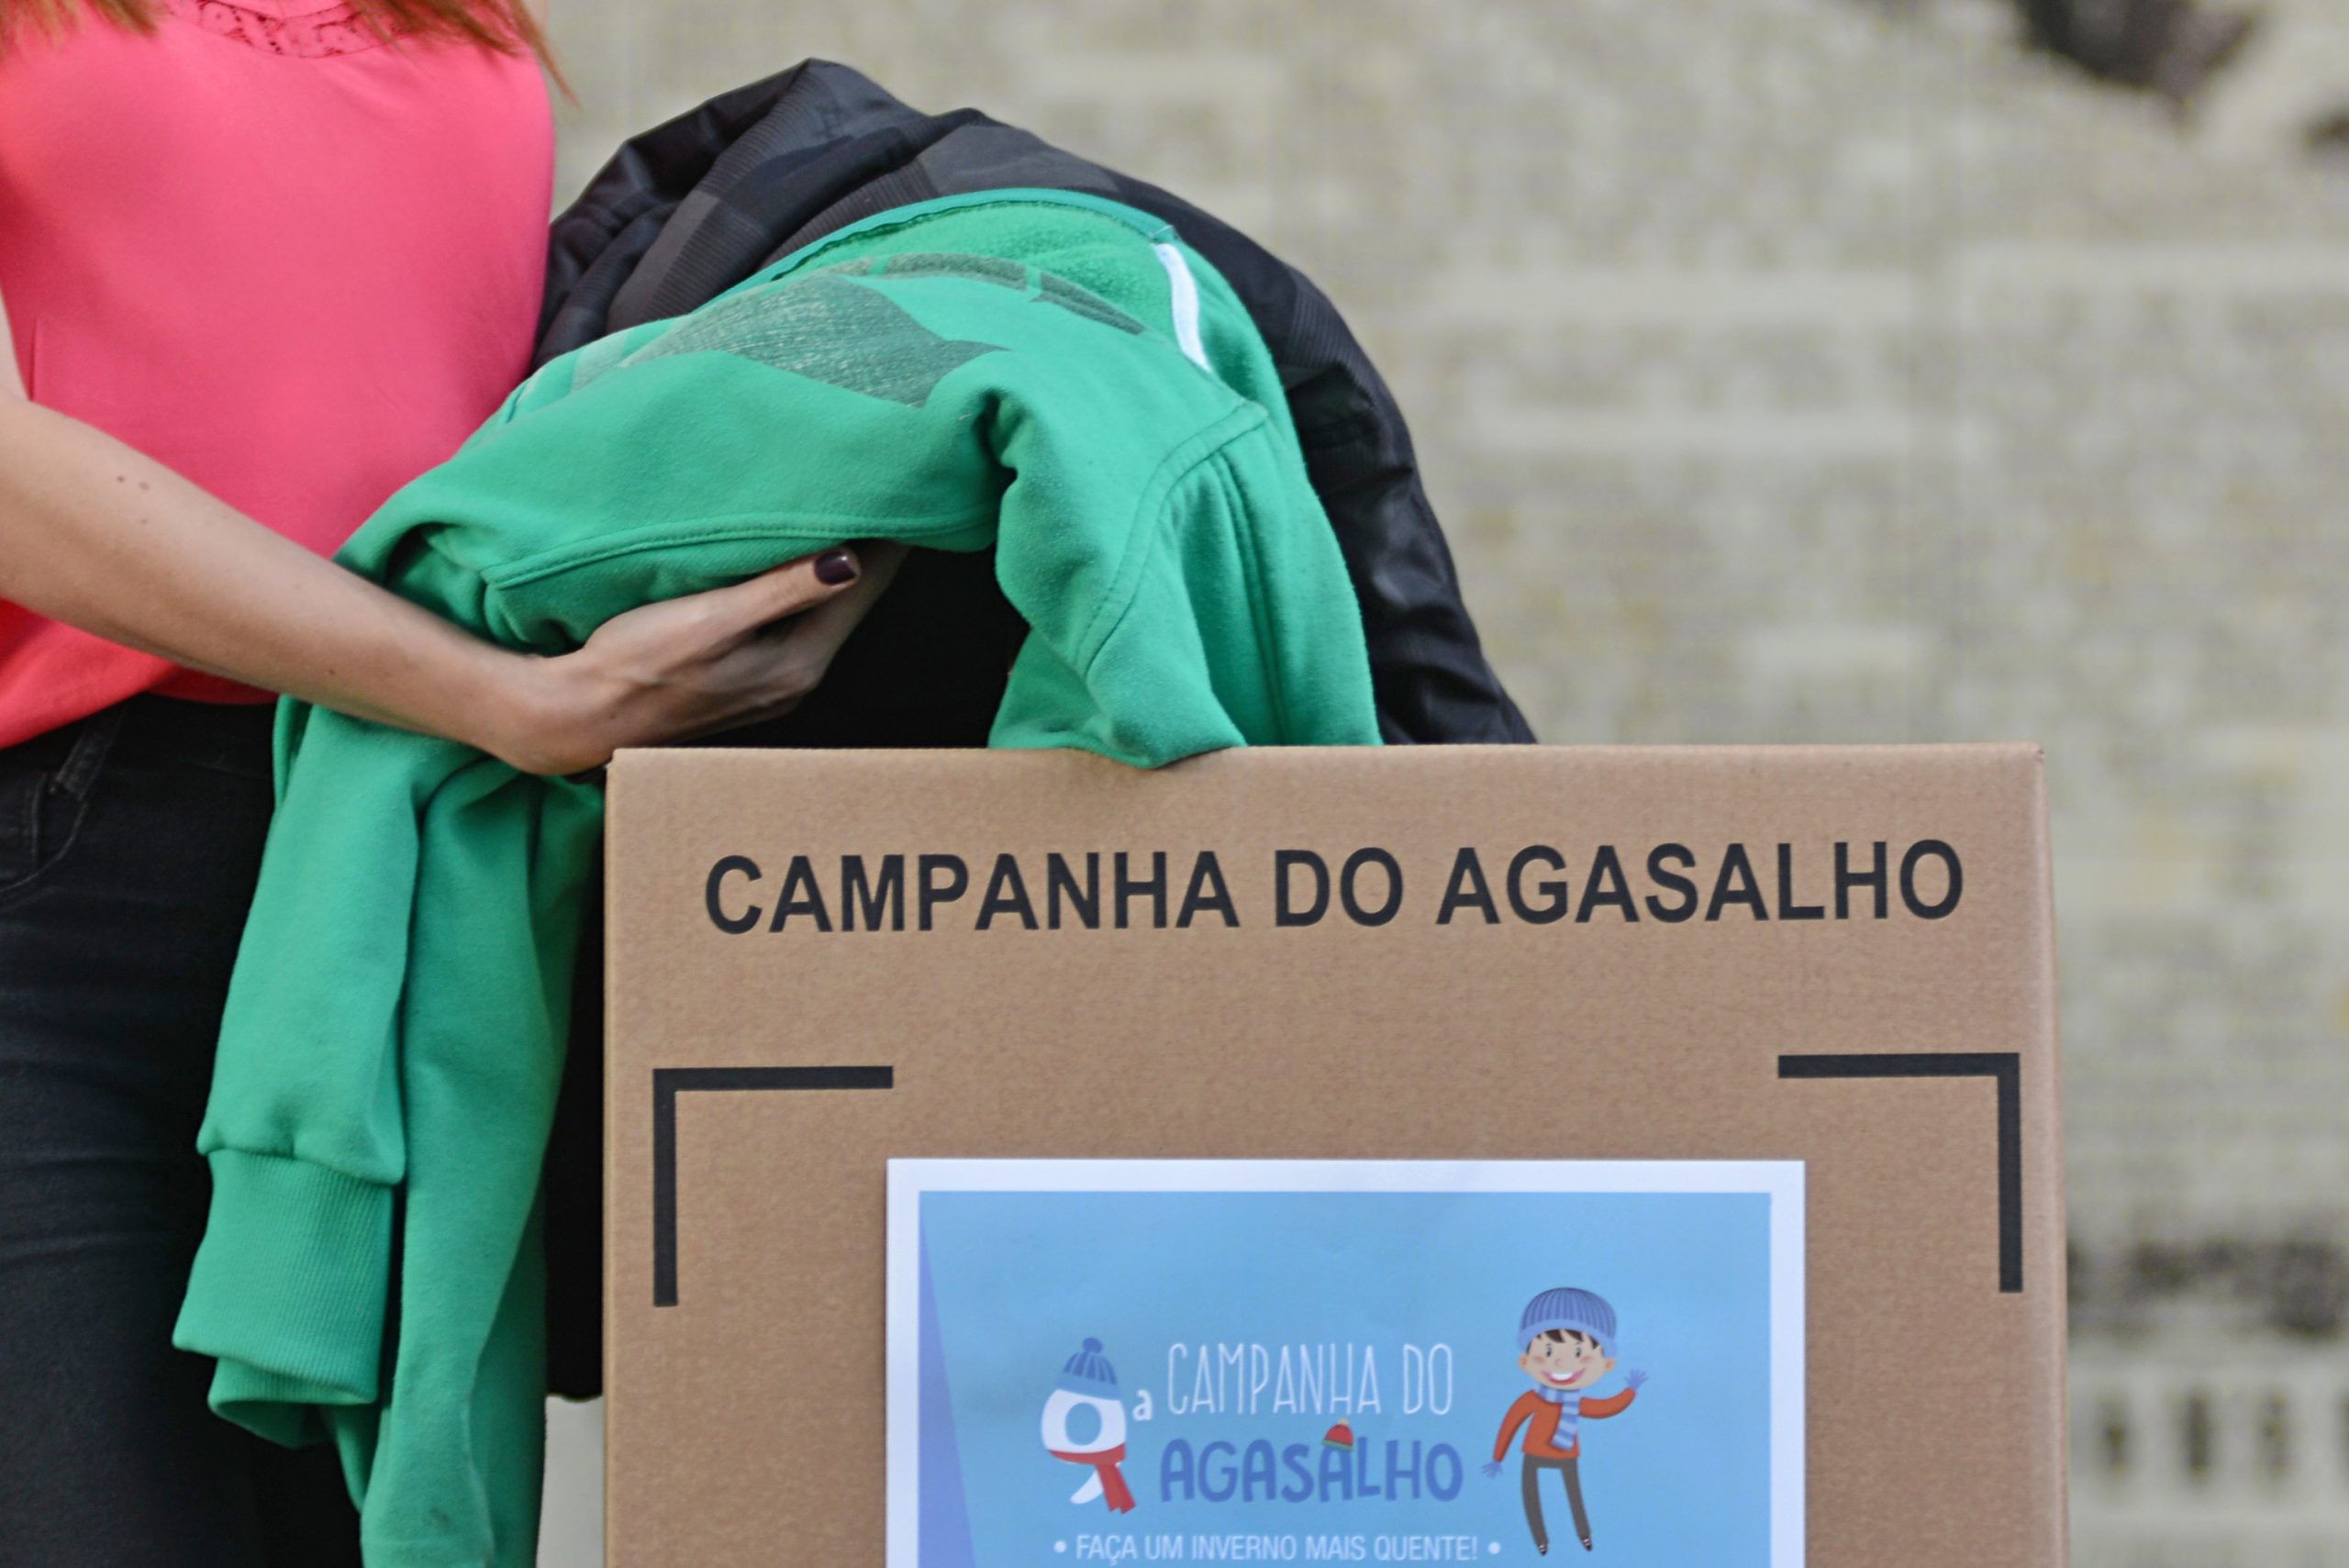 Campanha do Agasalho de Franca amplia número de pontos de coleta das doações